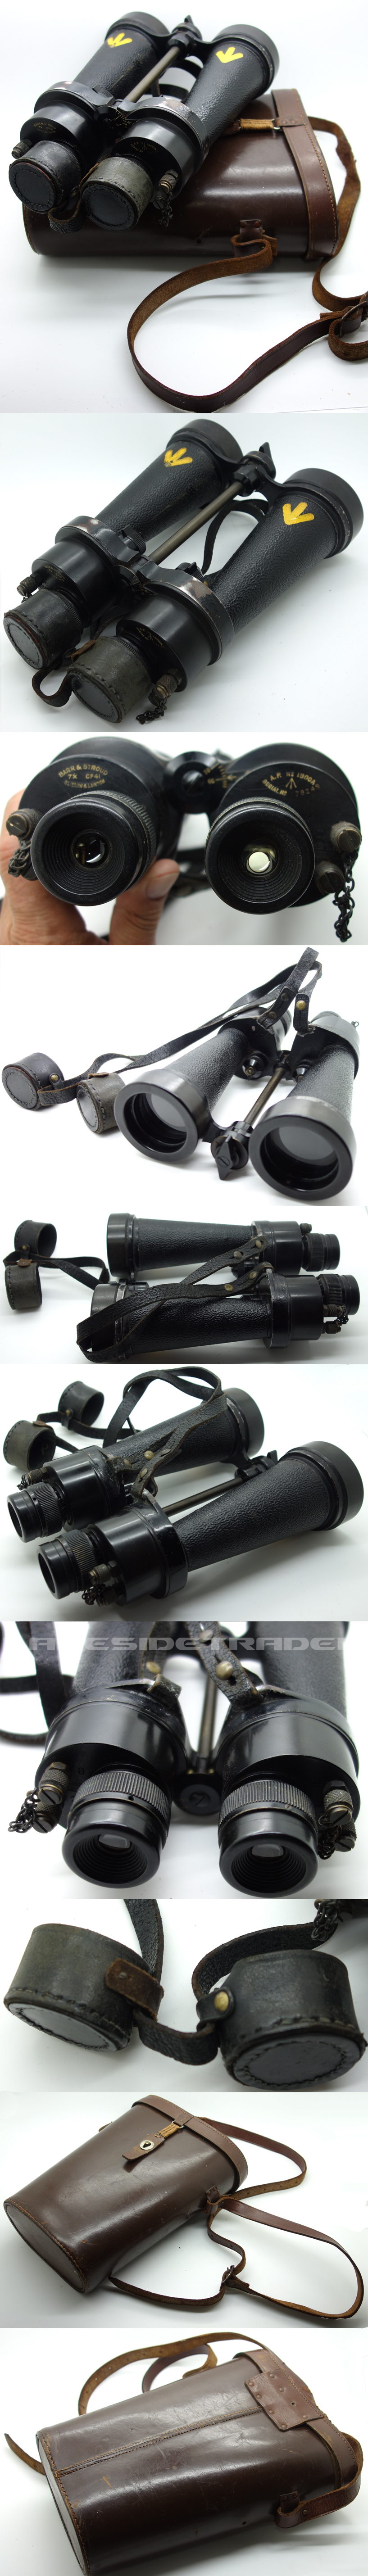 British Barr & Stroud CF 41, 7 x 50 Naval Binoculars & Case